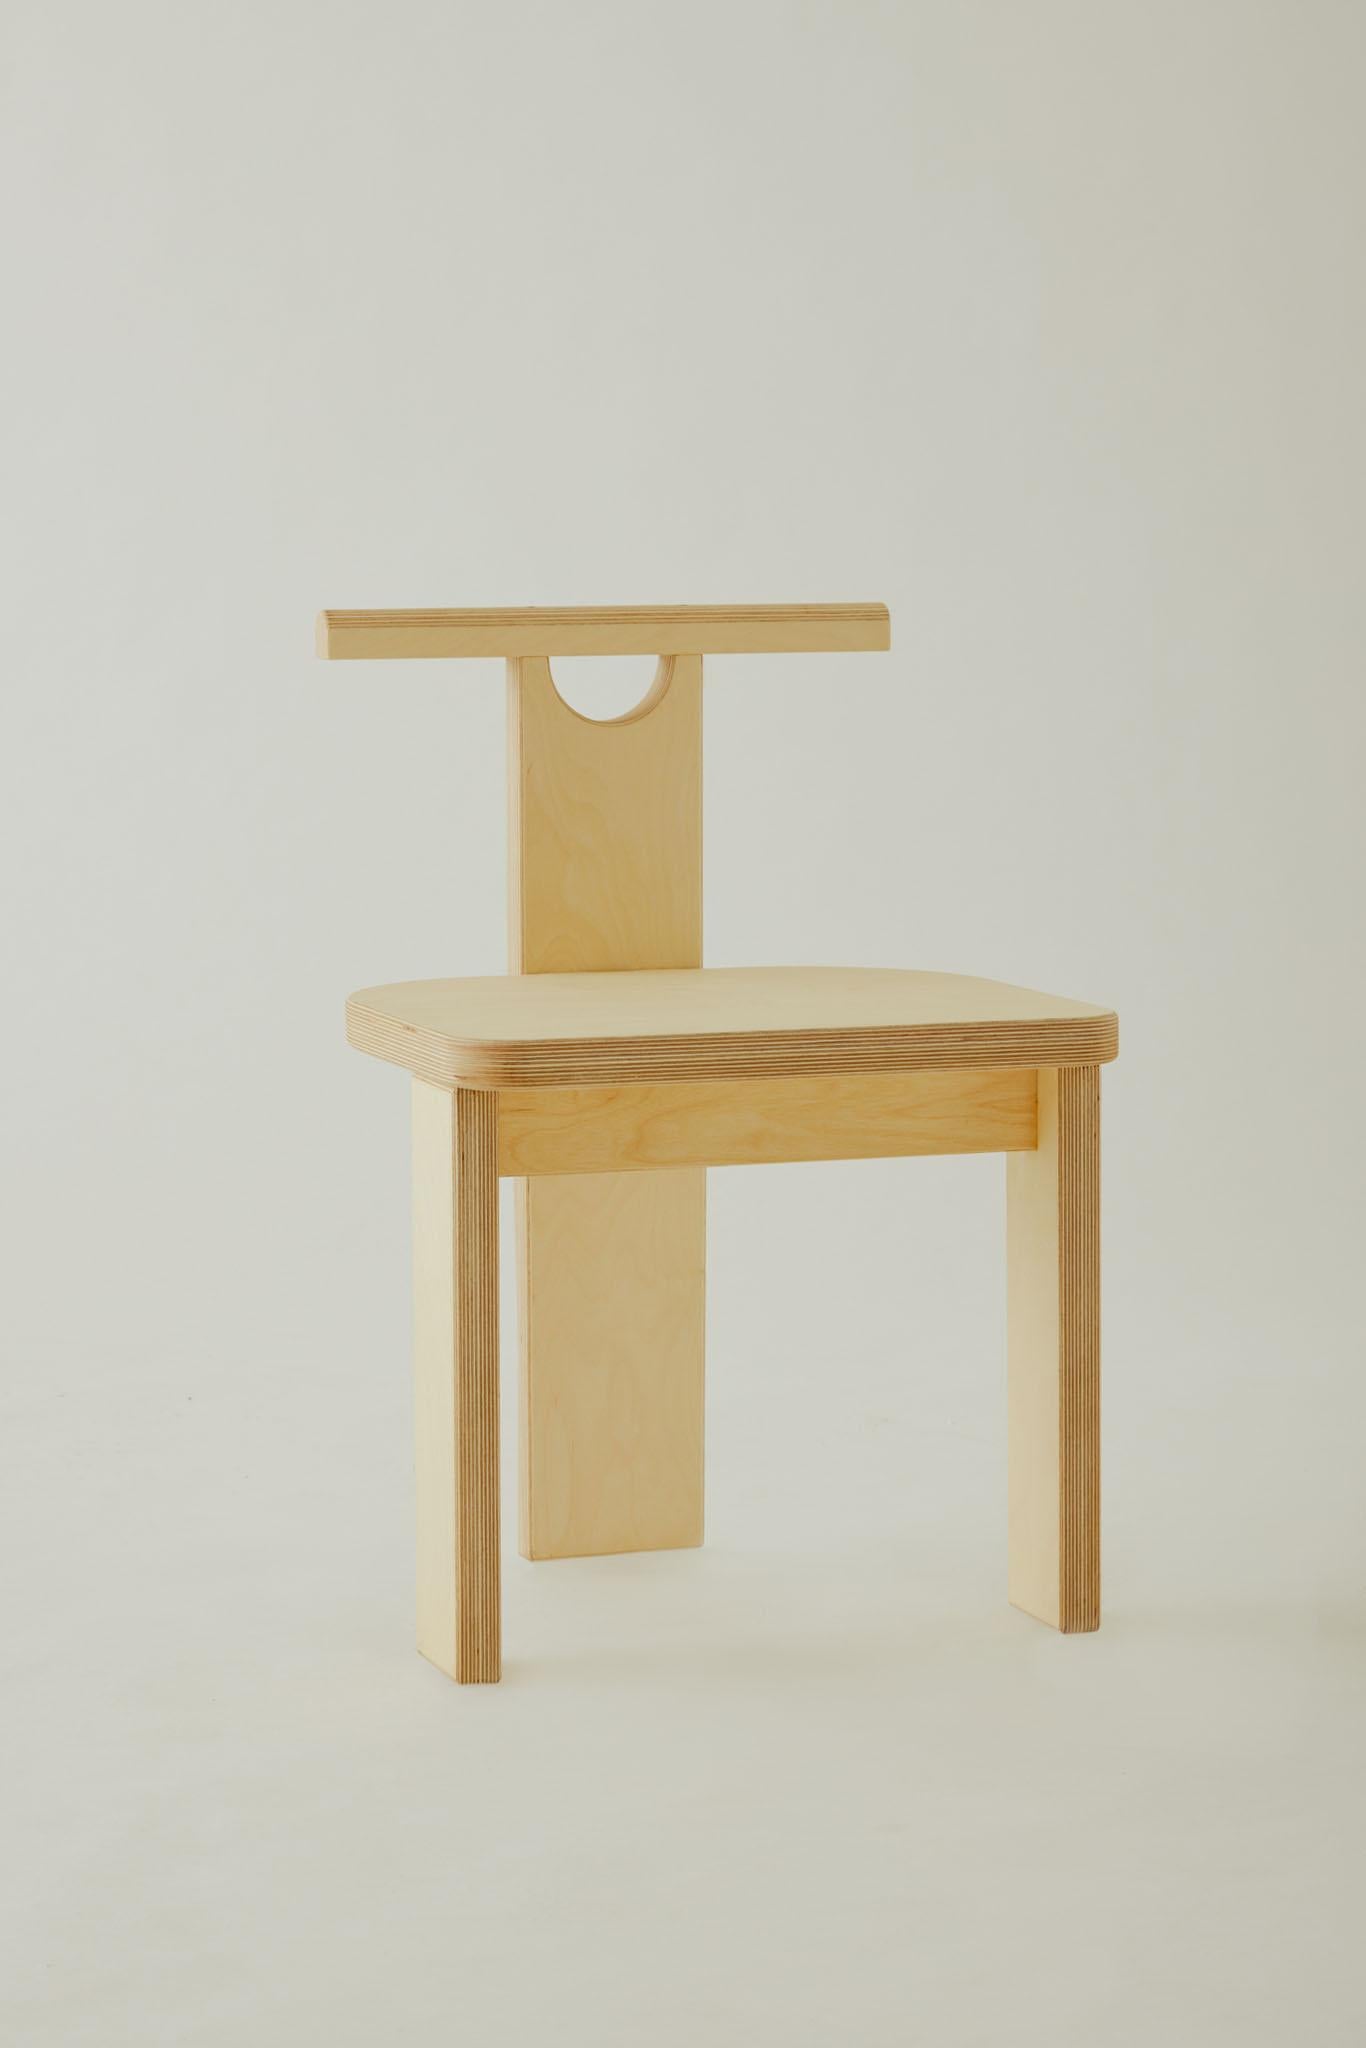 Der Tetris Chair mit seiner kantigen und starken Silhouette ist ein luzider Ausdruck von Schlichtheit. In Form und Gestalt inspiriert von der Freude am Spielen mit Bauklötzen, bringt dieser Stuhl eine kindliche Nostalgie in Ihren Arbeitsbereich. Die